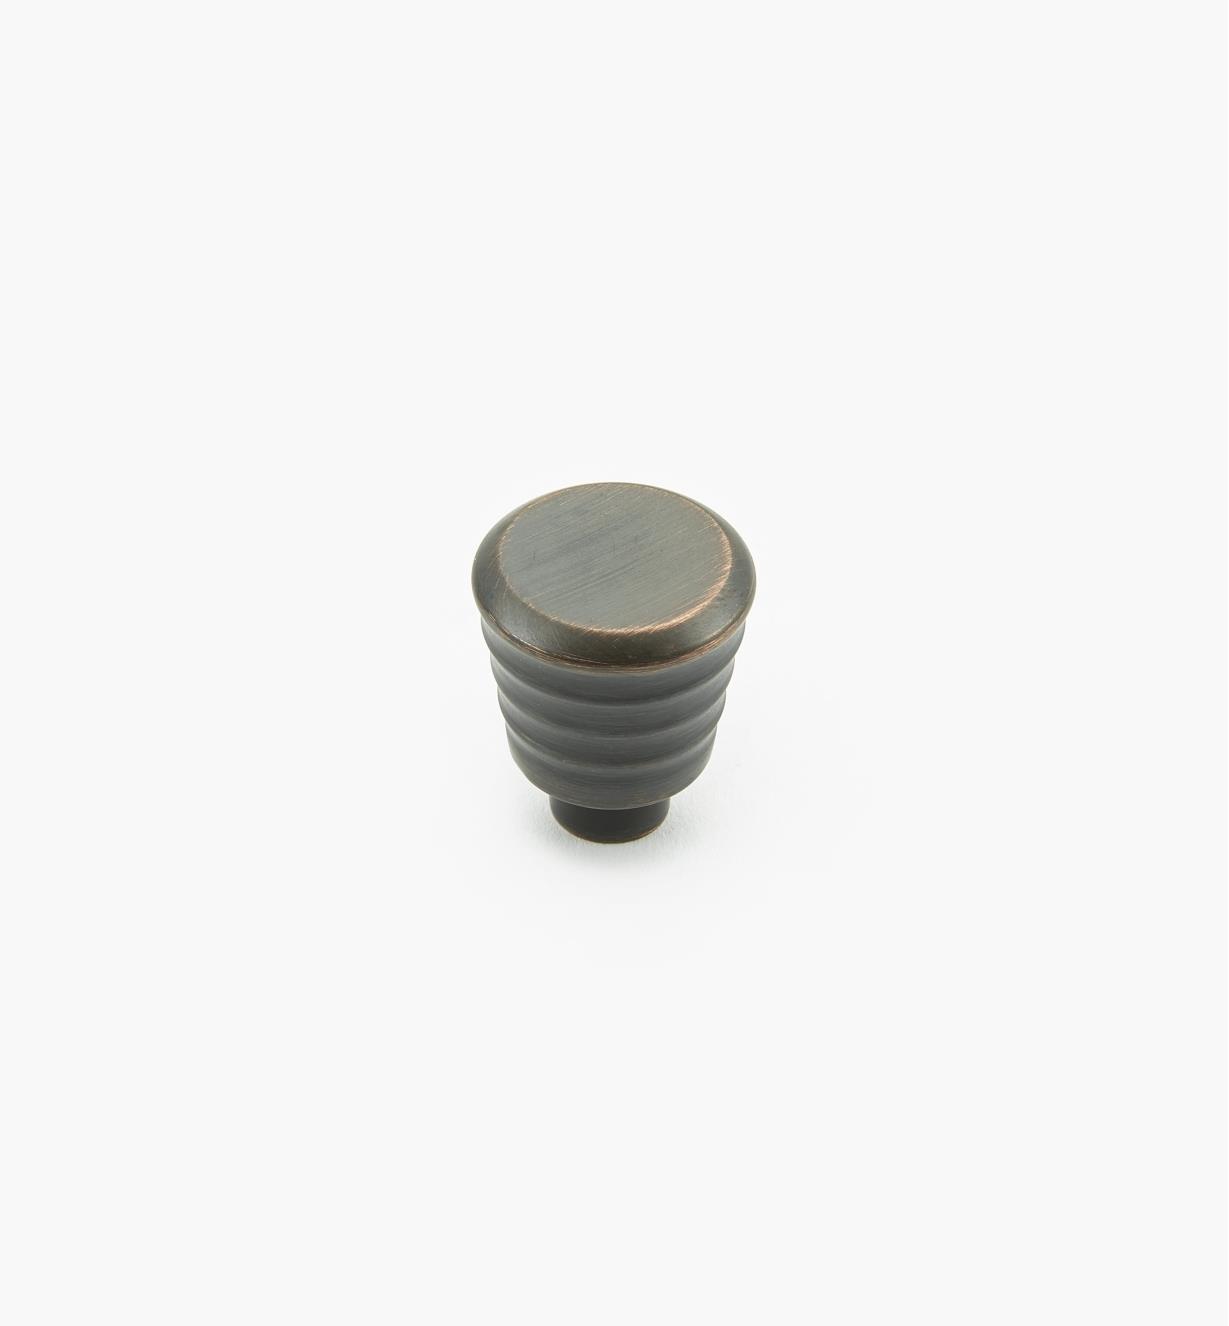 02A1380 - Oil-Rubbed Bronze Knob